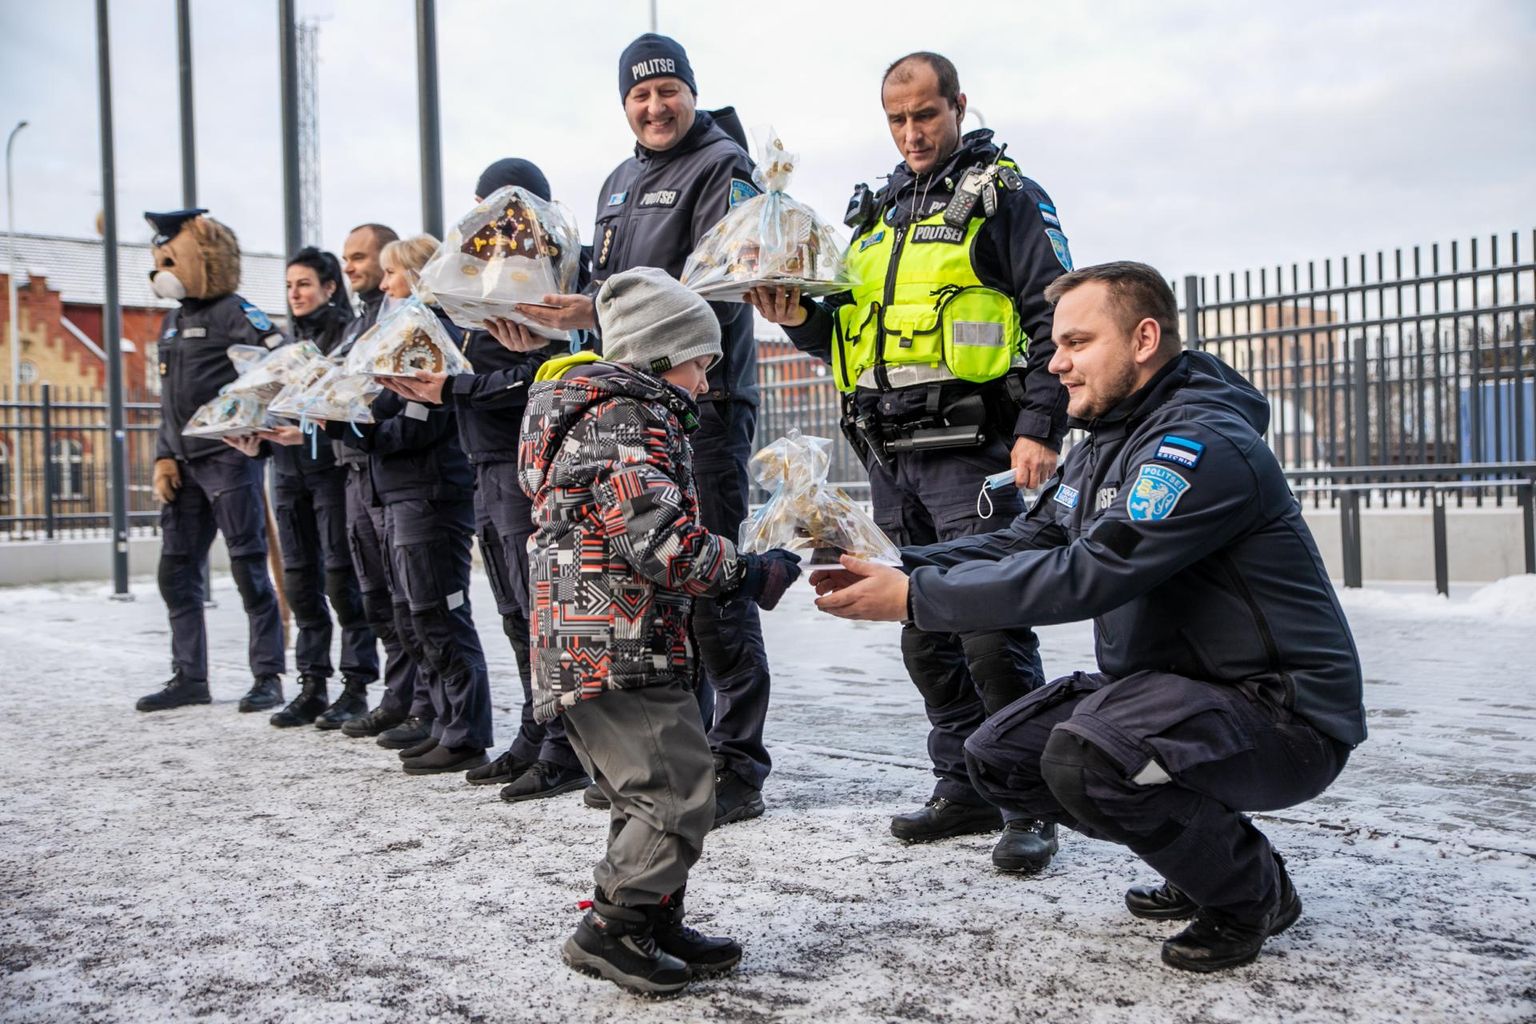 Вручение полиции домиков из пипаркоков, изготовленных воспитанниками детского сада Trall.